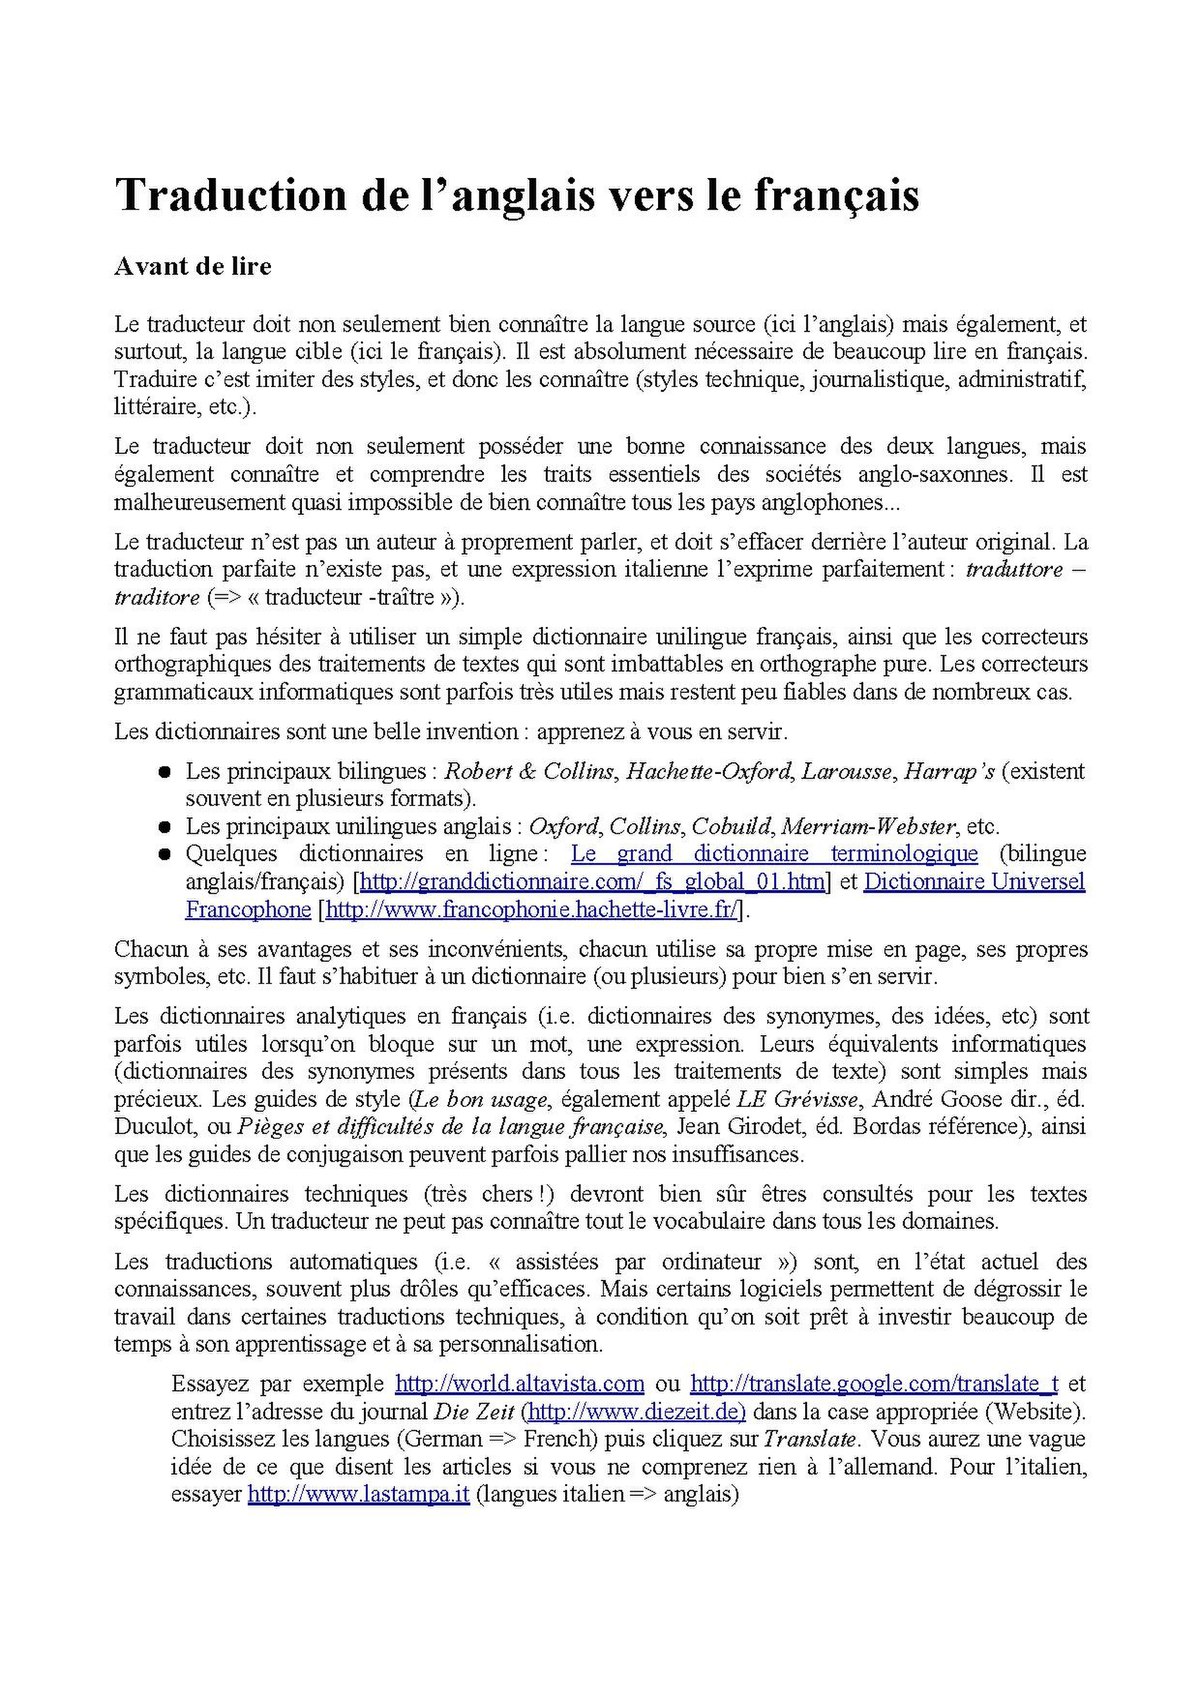 Fichier:Traduction de langlais vers le français.pdf — Wikipédia